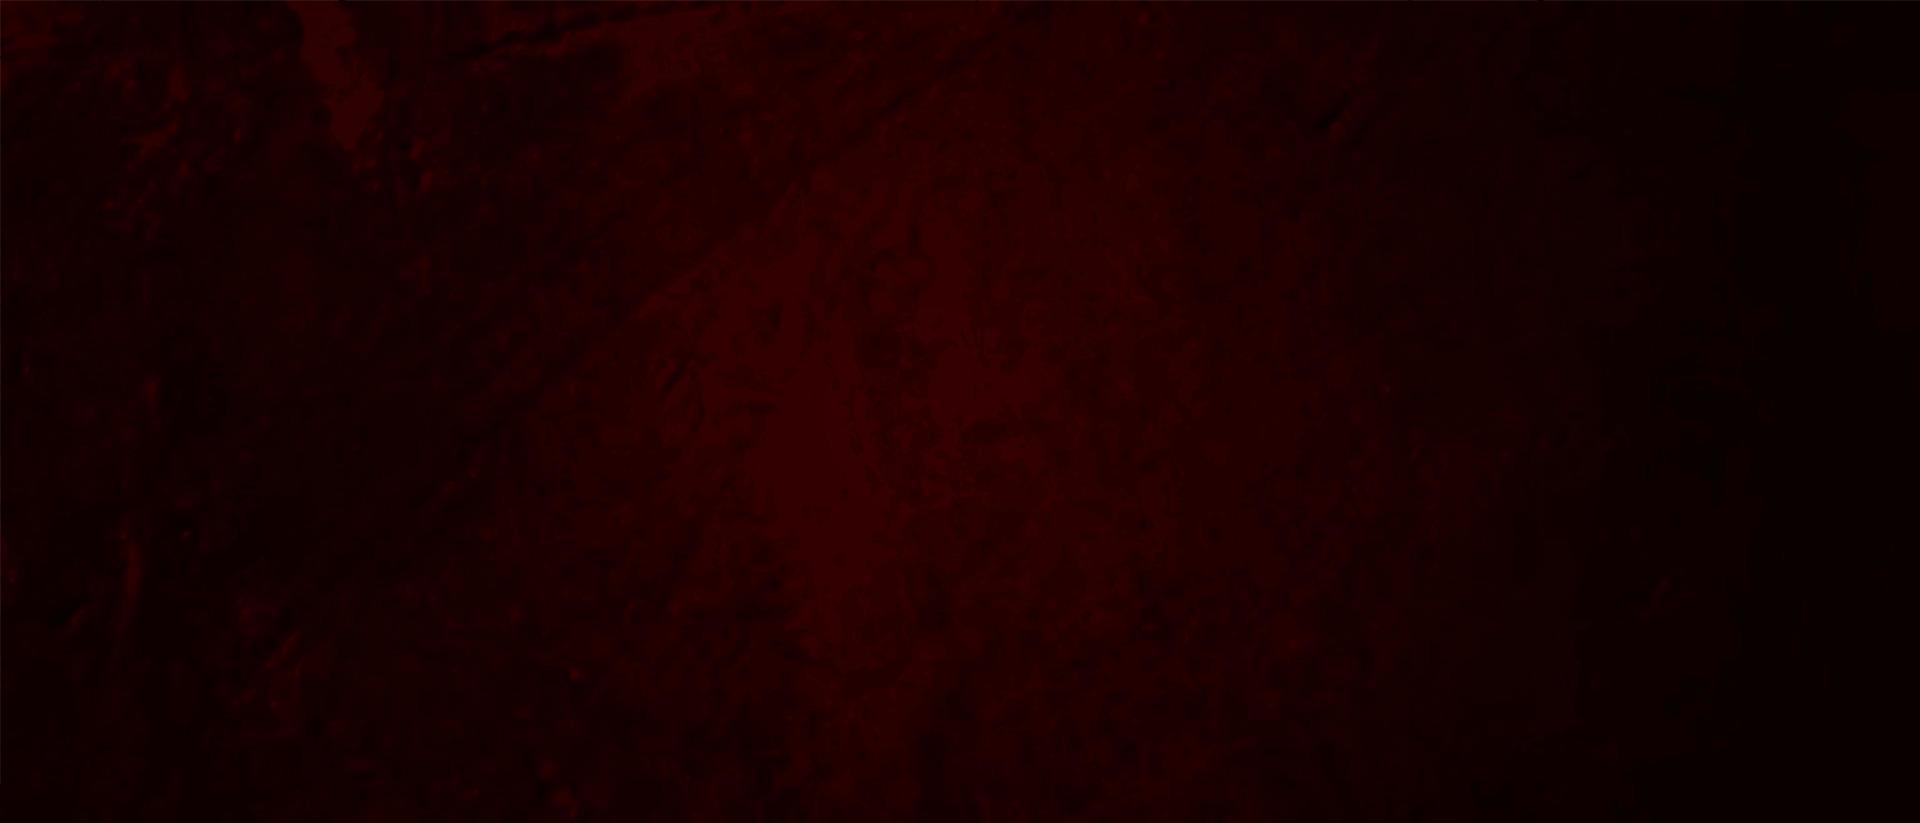 Fondo de textura abstracta grunge rojo oscuro vector